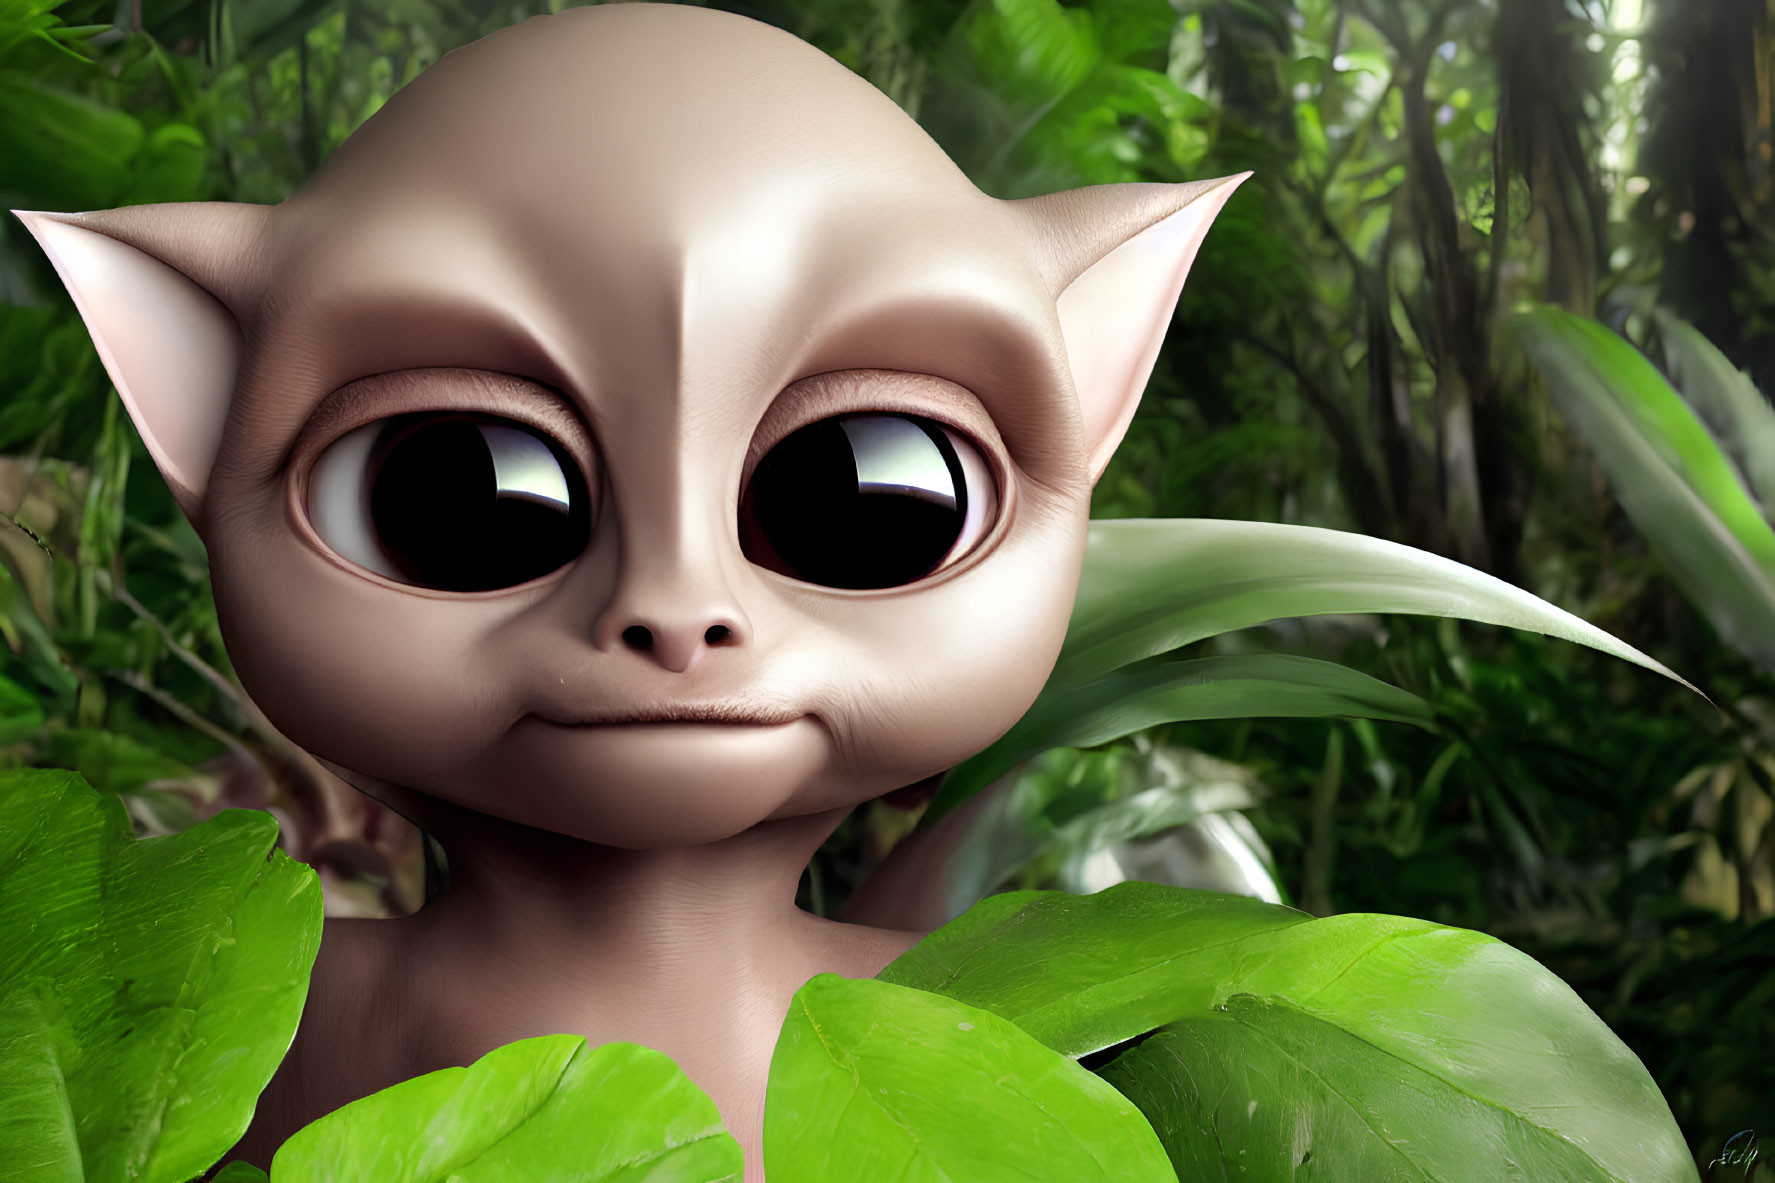 Friendly Alien Peeking from Green Foliage in 3D Render